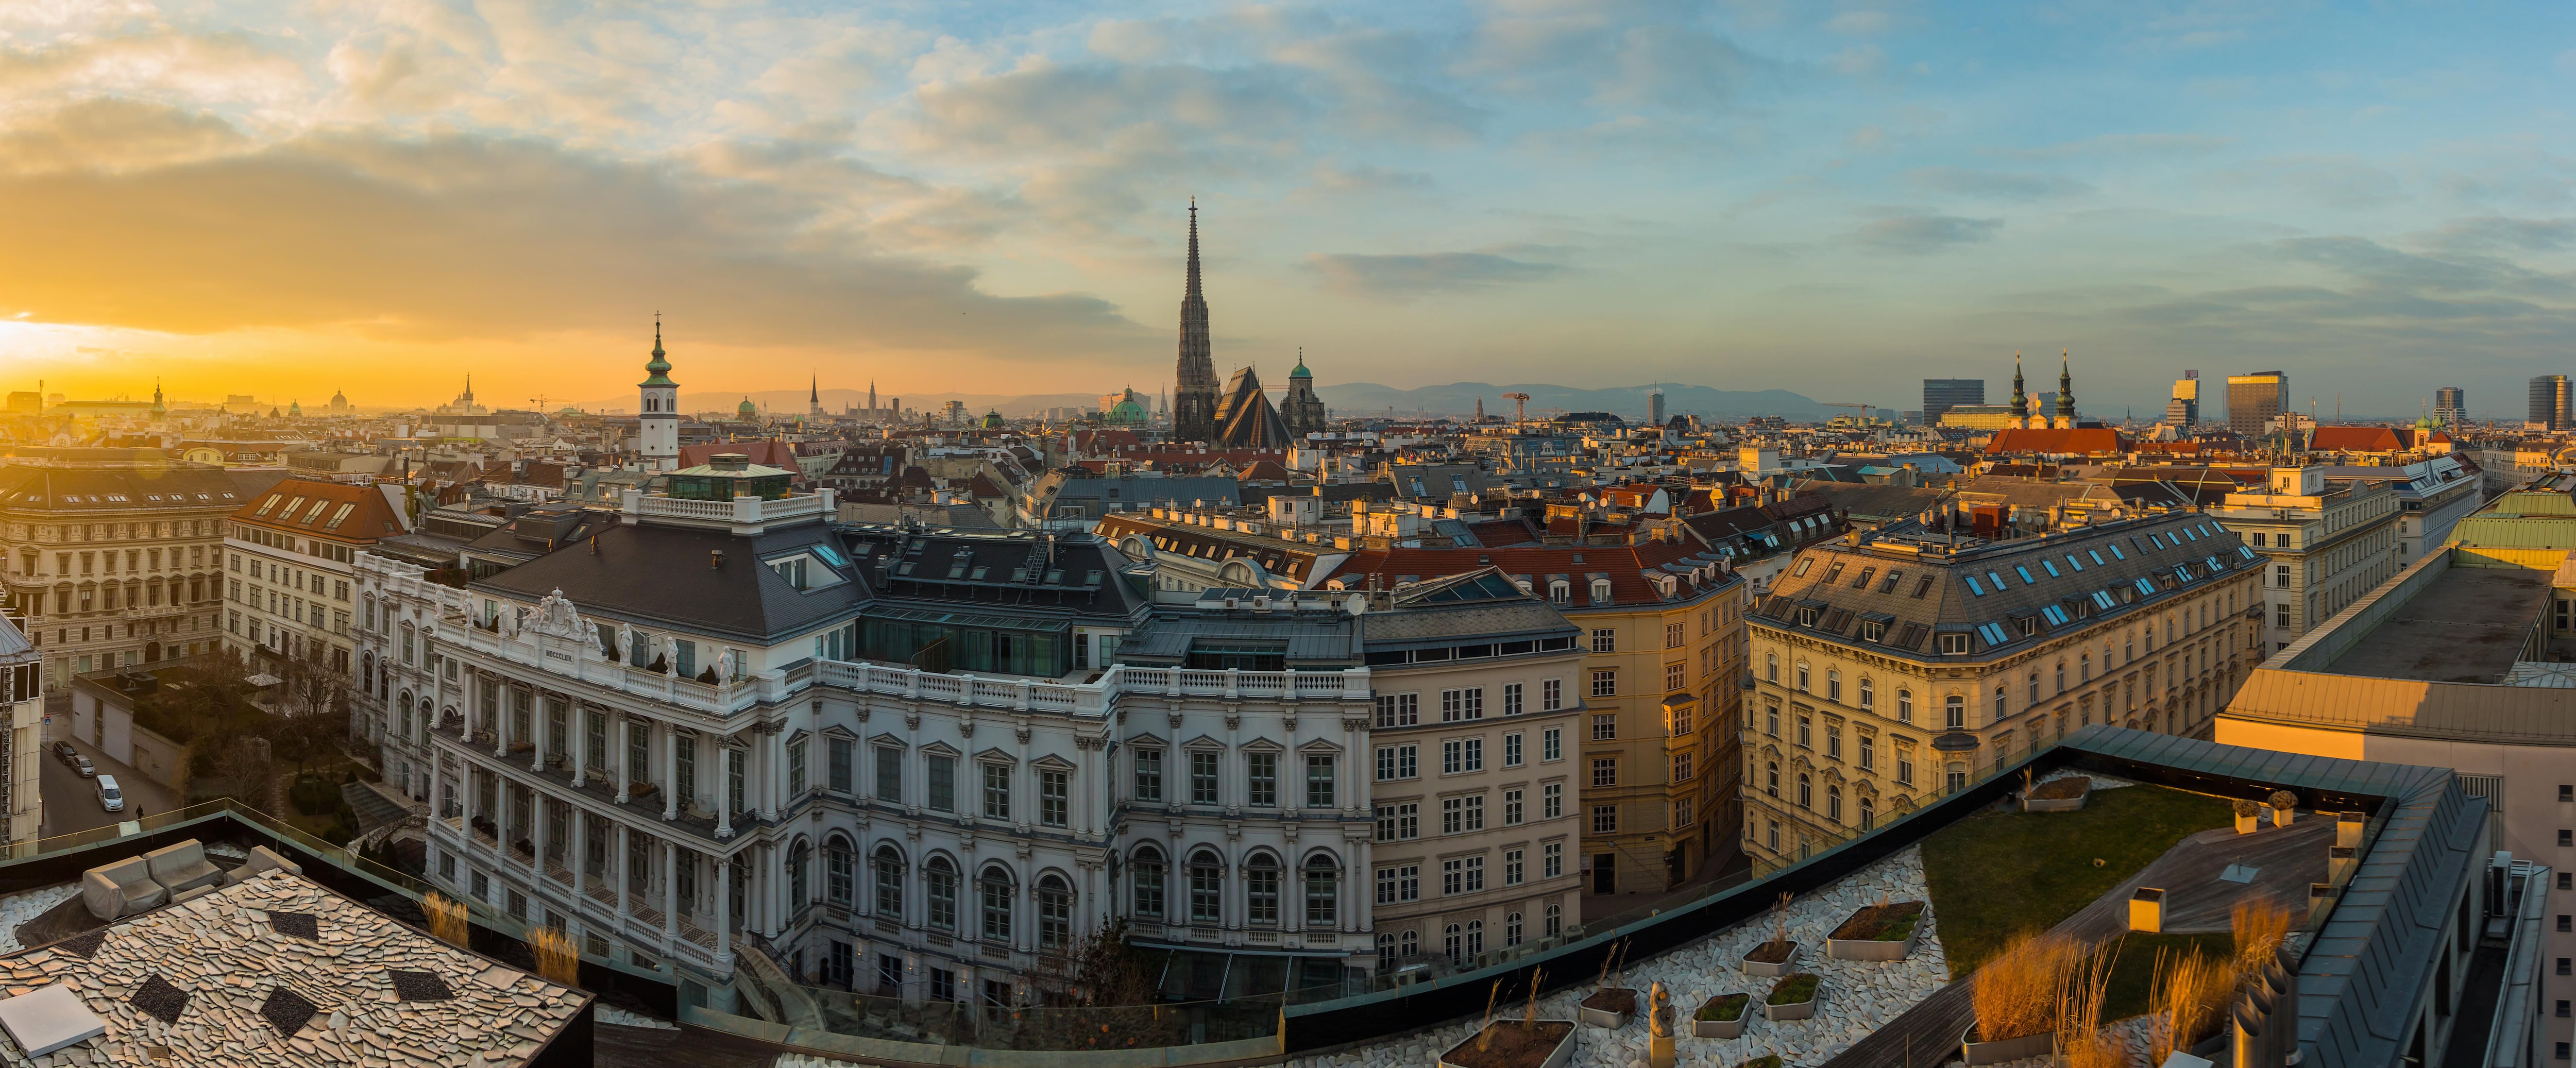 Viena lidera como la ciudad con mejor calidad de vida mundial 